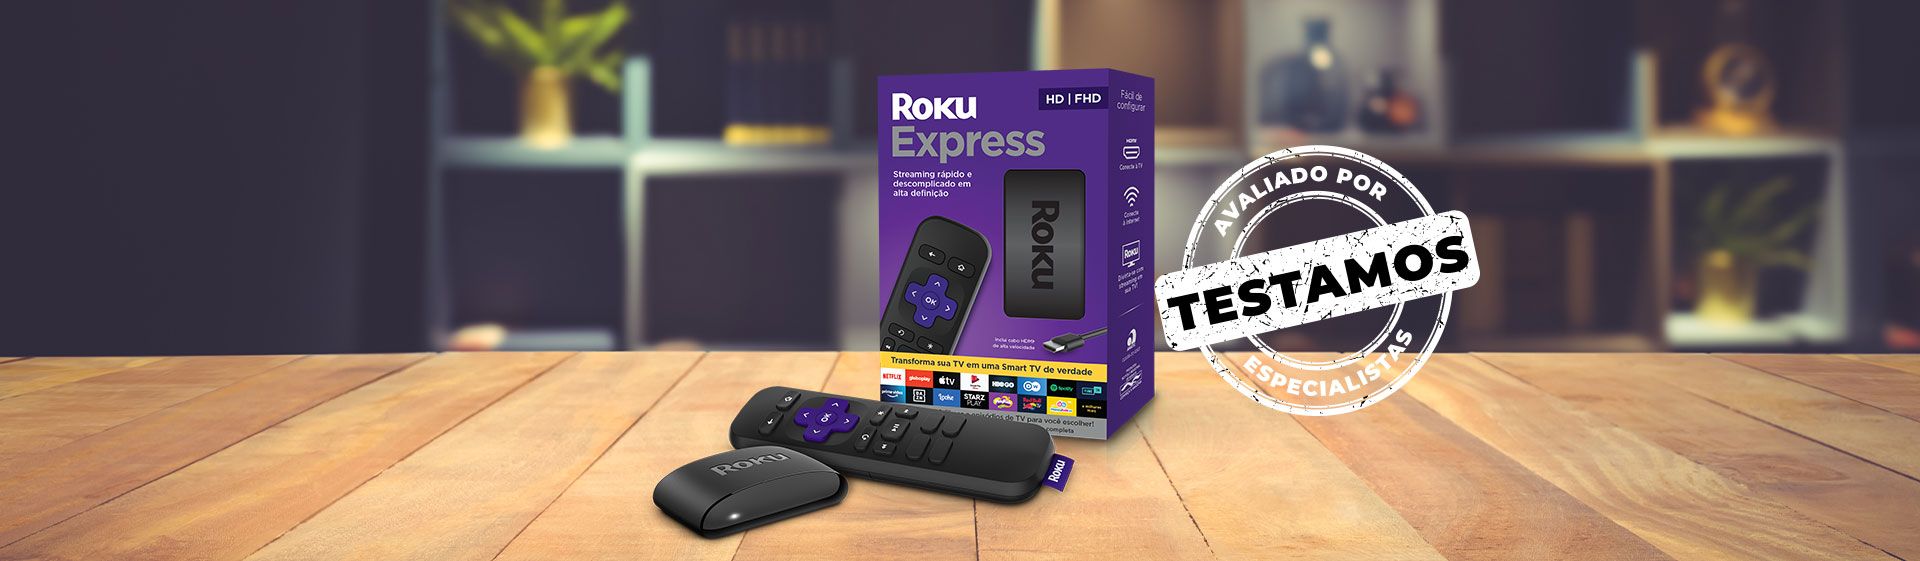 Roku Express: resolução Full HD e boa variedade de apps